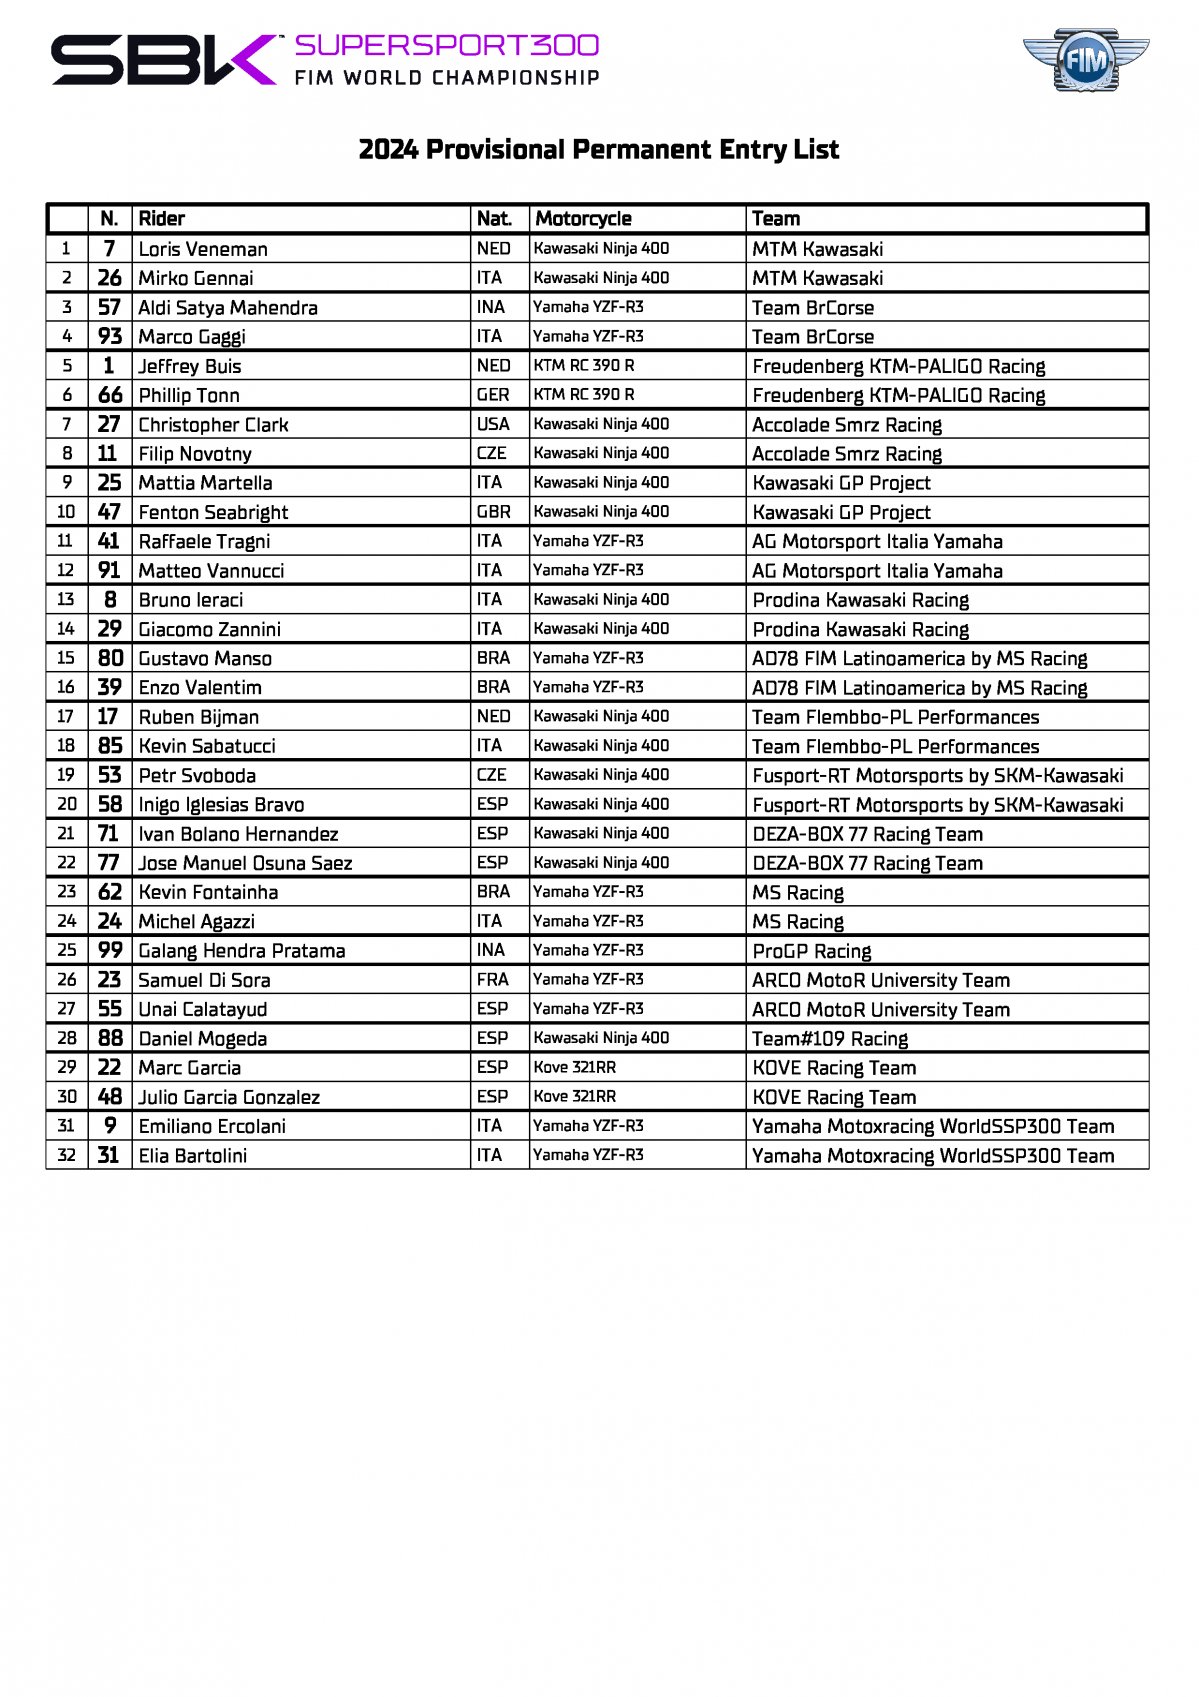 Списки участников World Supersport 300 (2024)